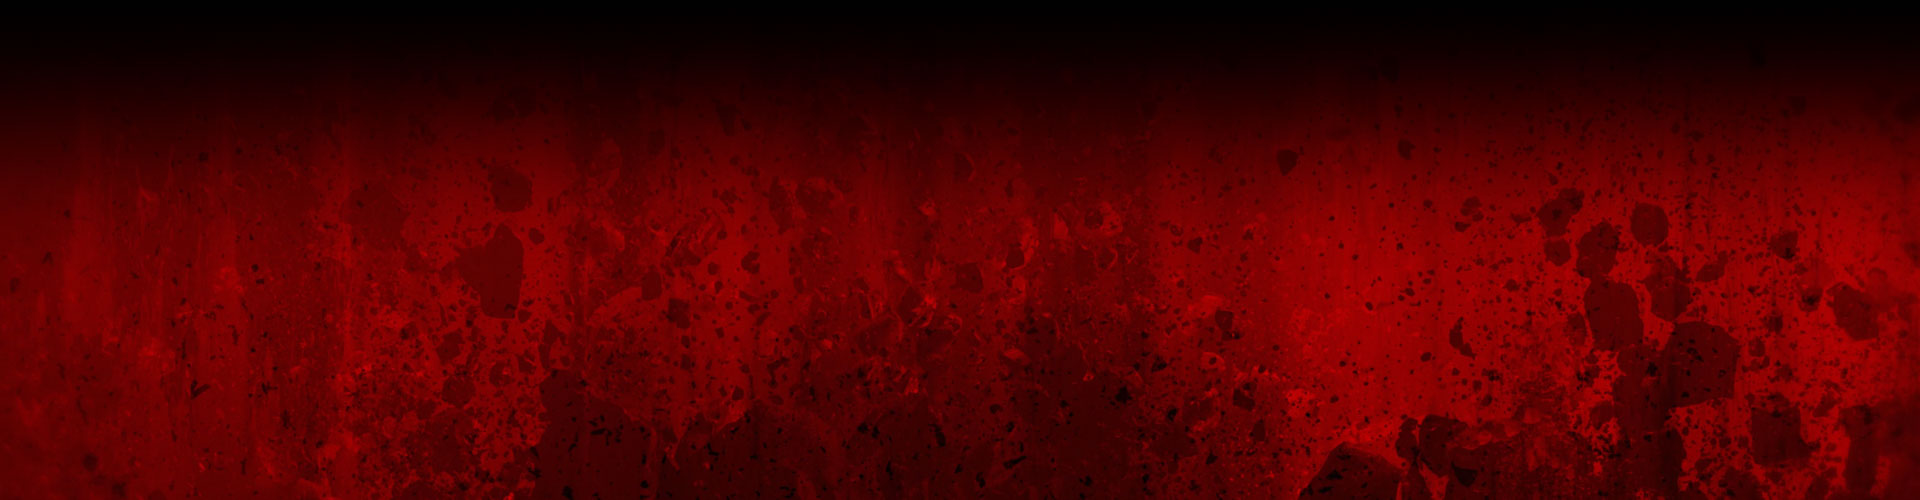 Uma parede de vermelho coberto de respingo escuro e imagens de rochas destruídas